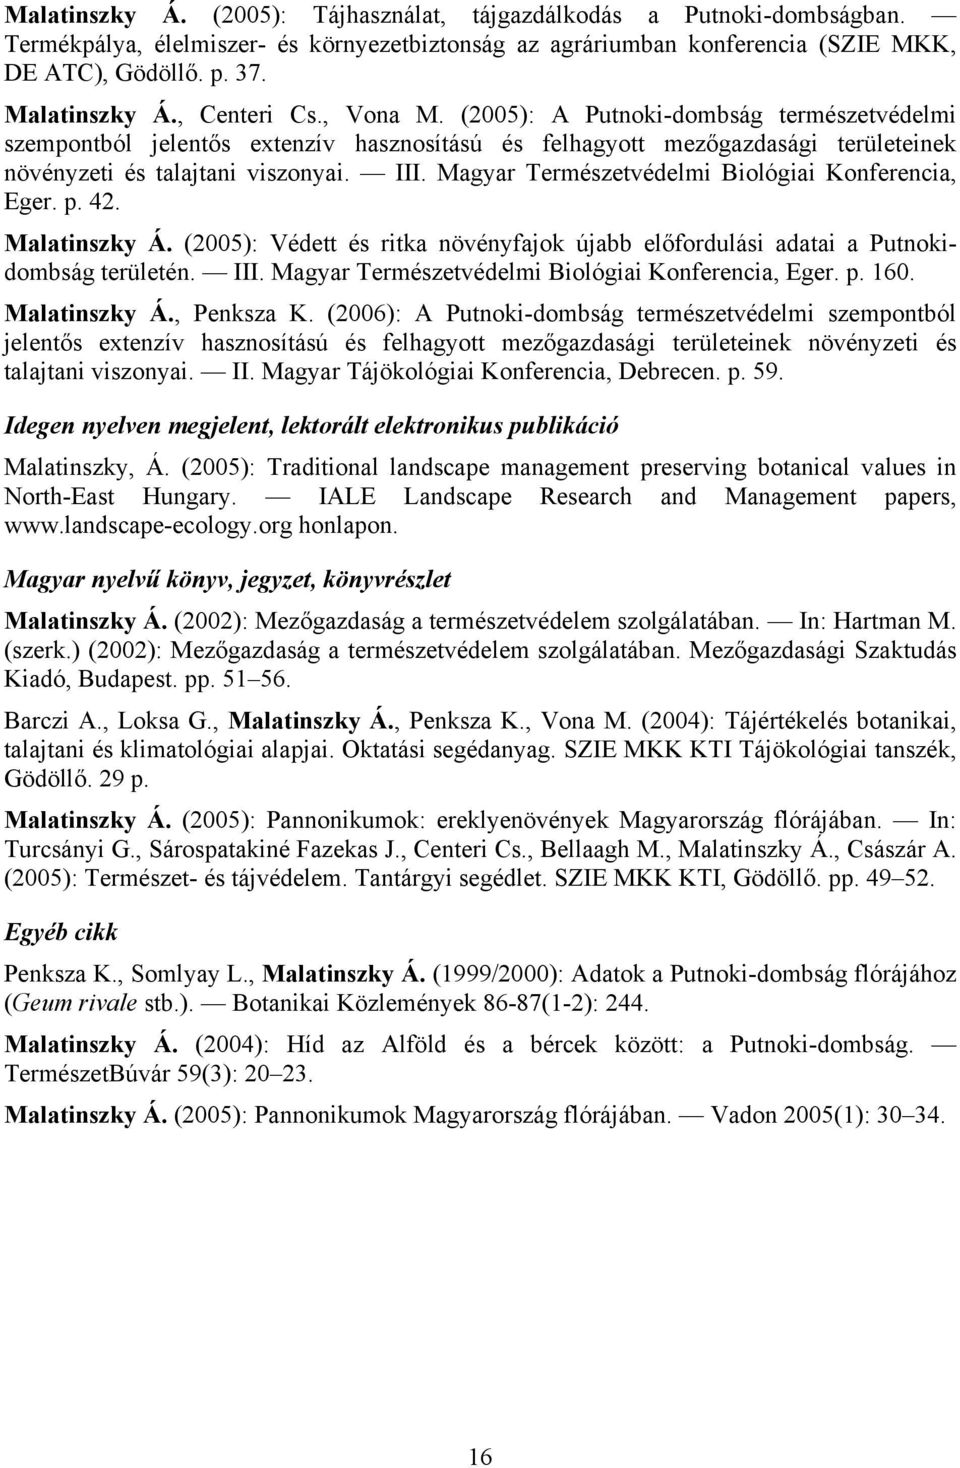 Magyar Természetvédelmi Biológiai Konferencia, Eger. p. 42. Malatinszky Á. (2005): Védett és ritka növényfajok újabb előfordulási adatai a Putnokidombság területén. III.